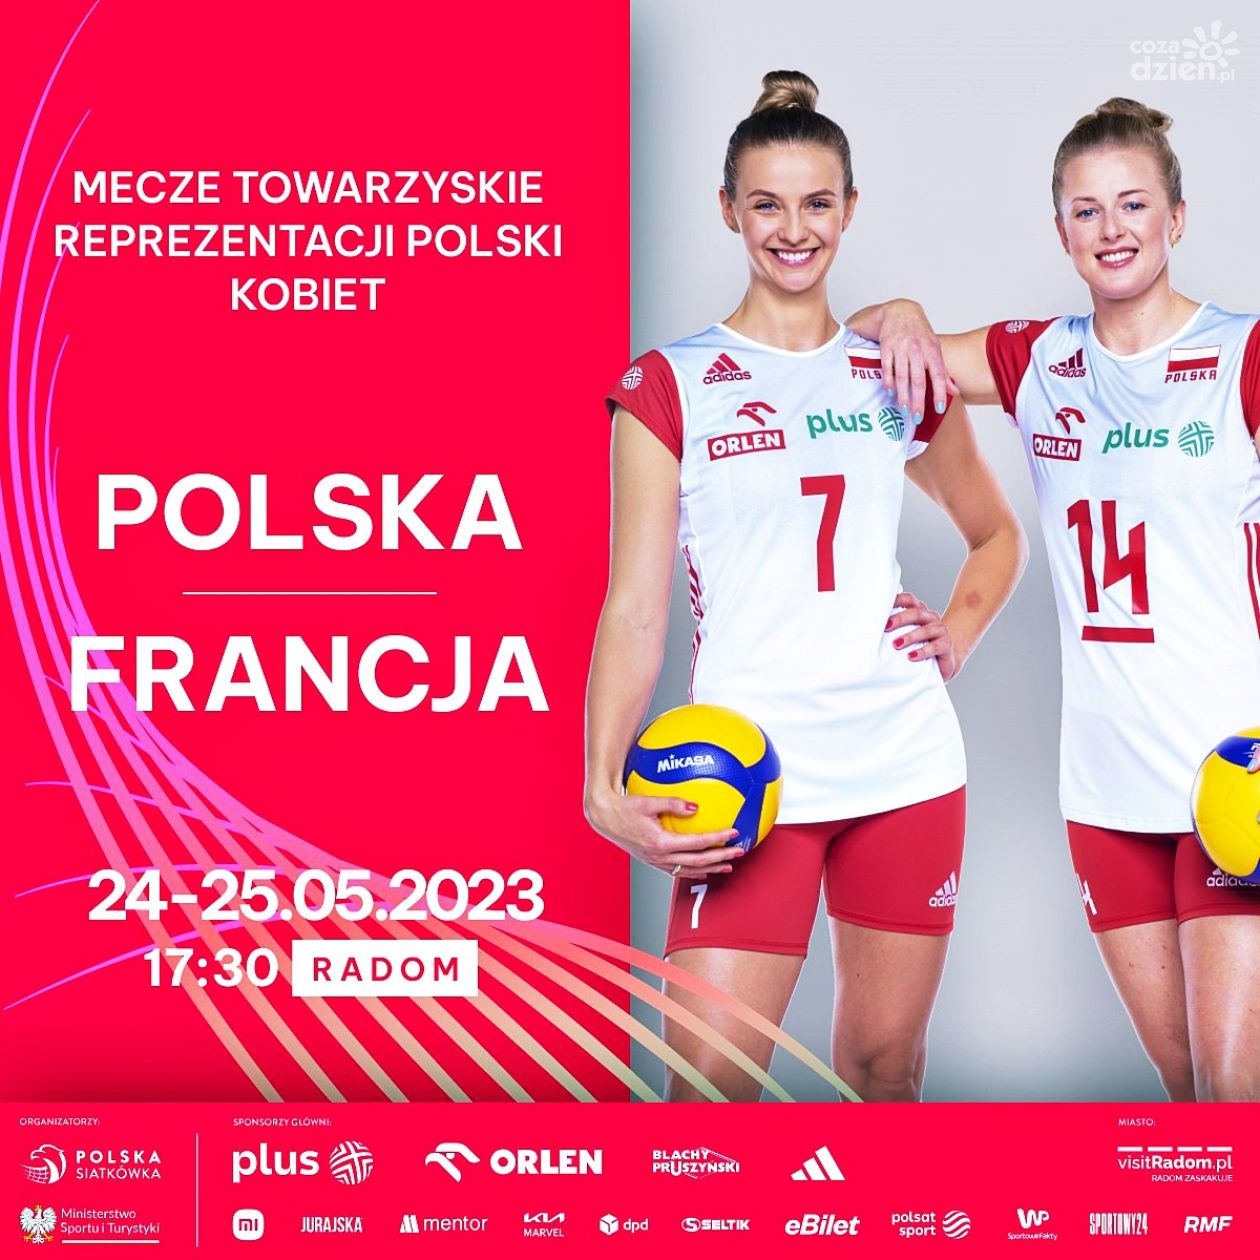 Trwa sprzedaż biletów na mecze siatkarskich reprezentacji kobiet Polska - Francja w RCS